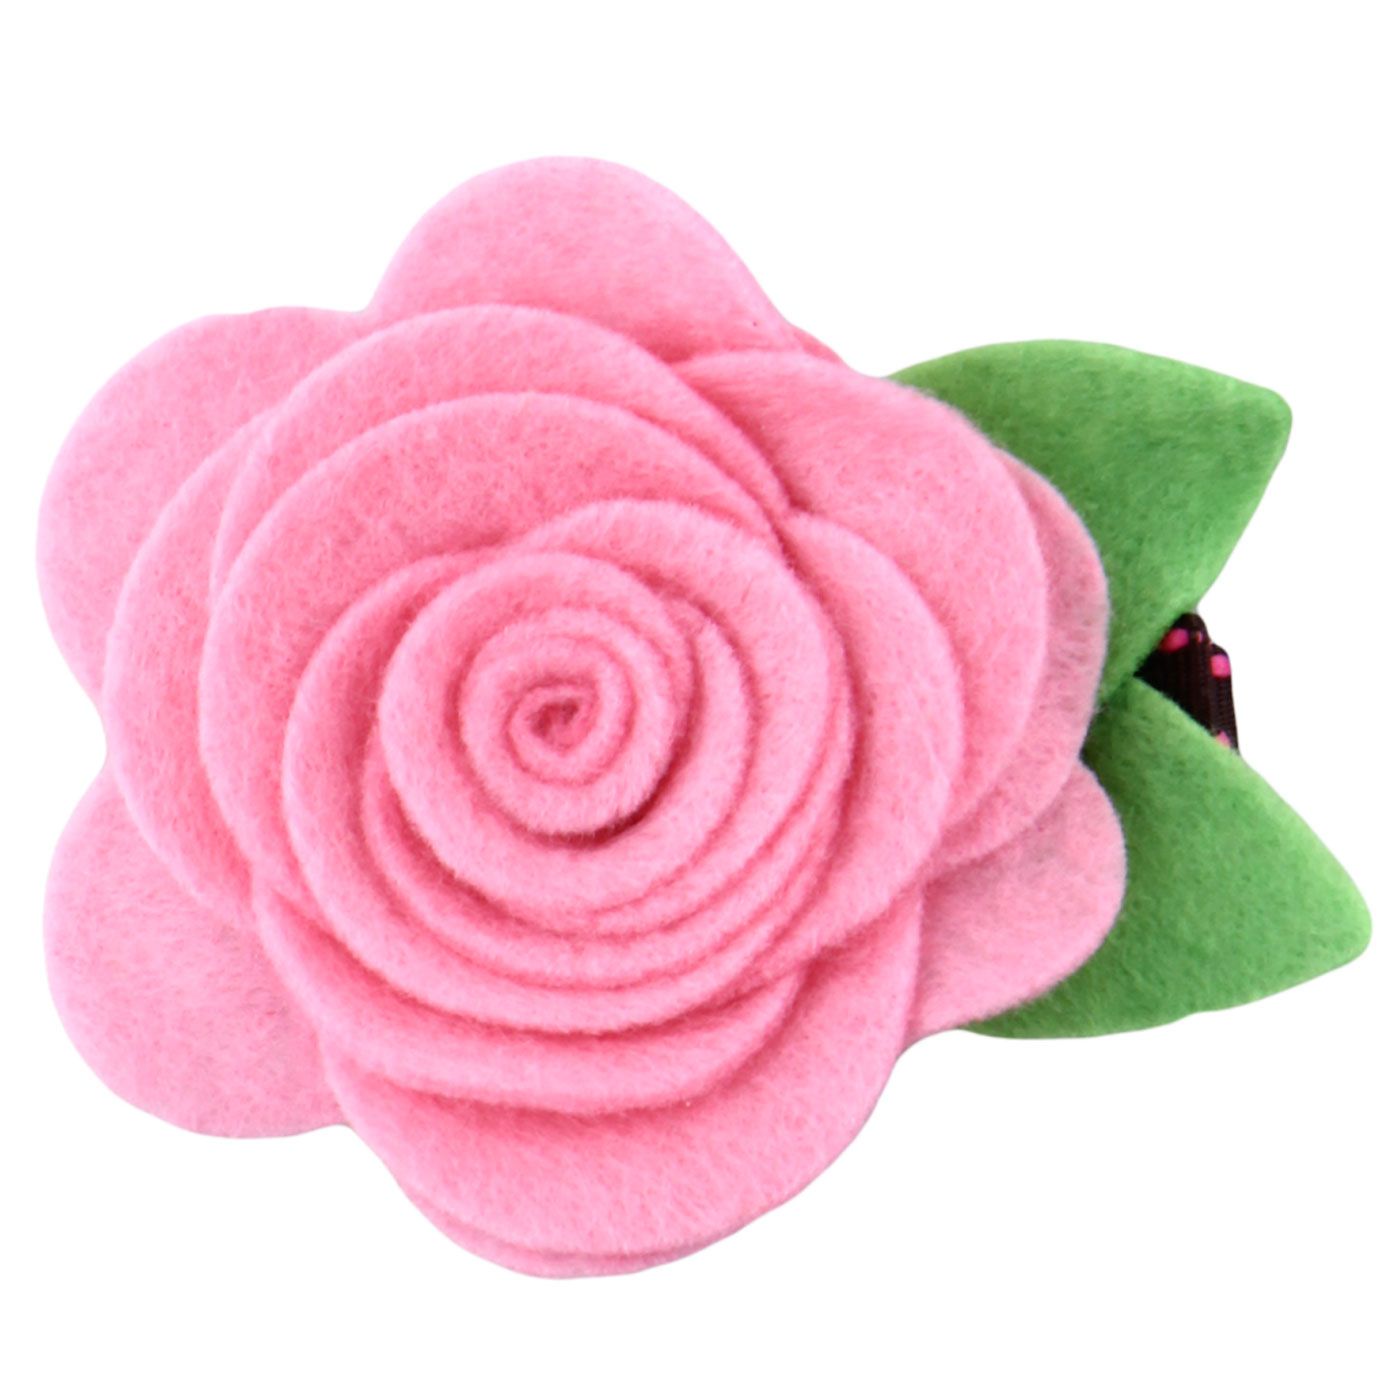 Bebecroc Felt Rose Flower Clip Hot Pink - 1